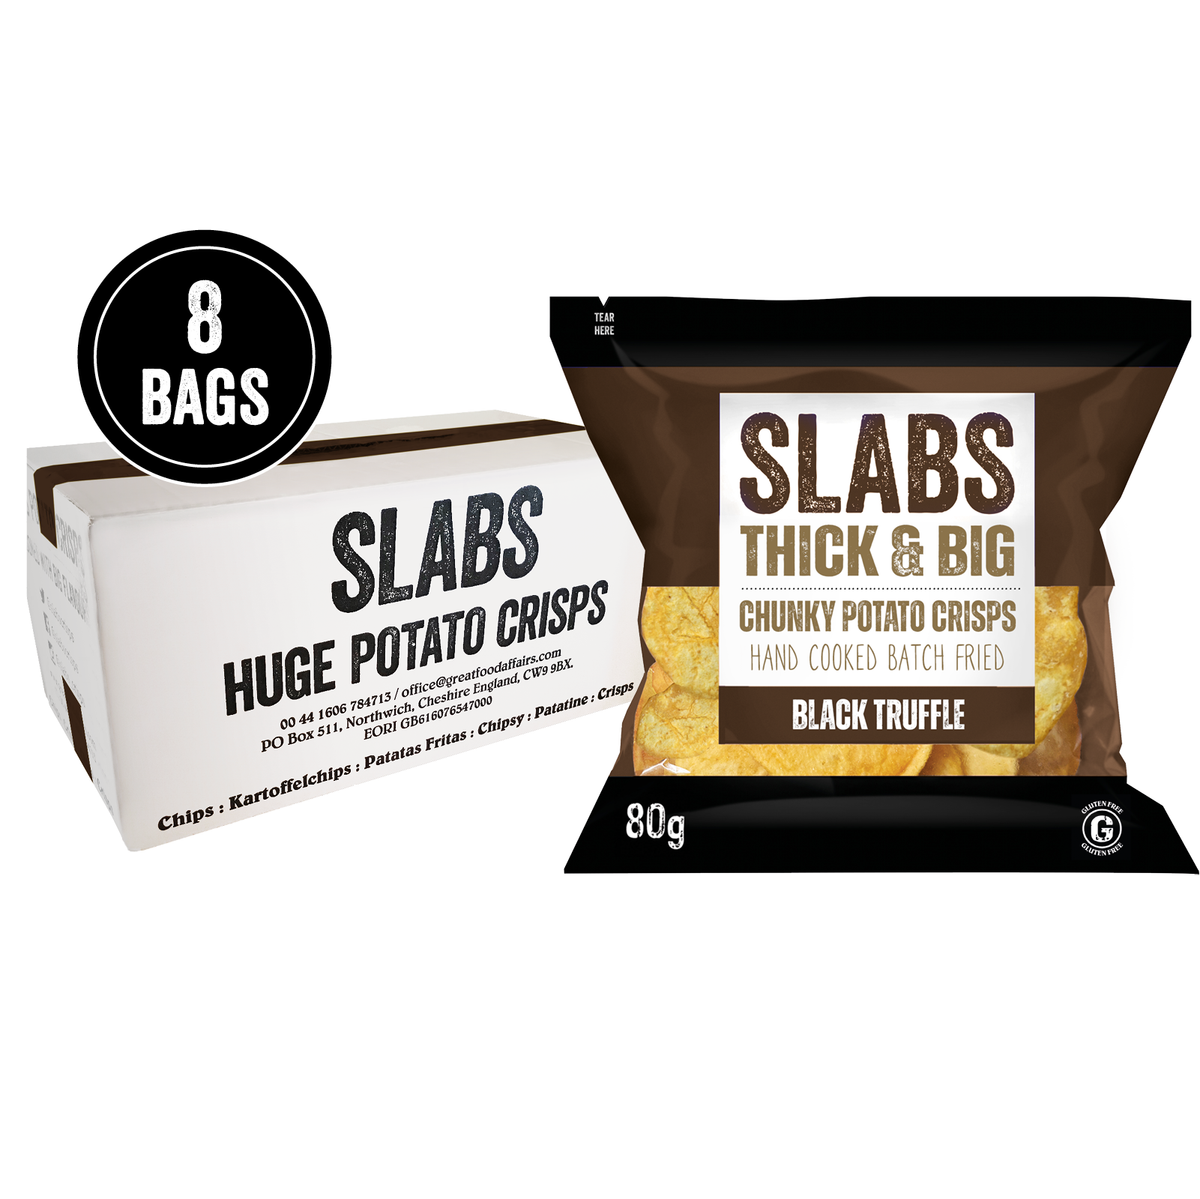 SLABS BLACK TRUFFLE 80g (2.8oz) box of 8 bags